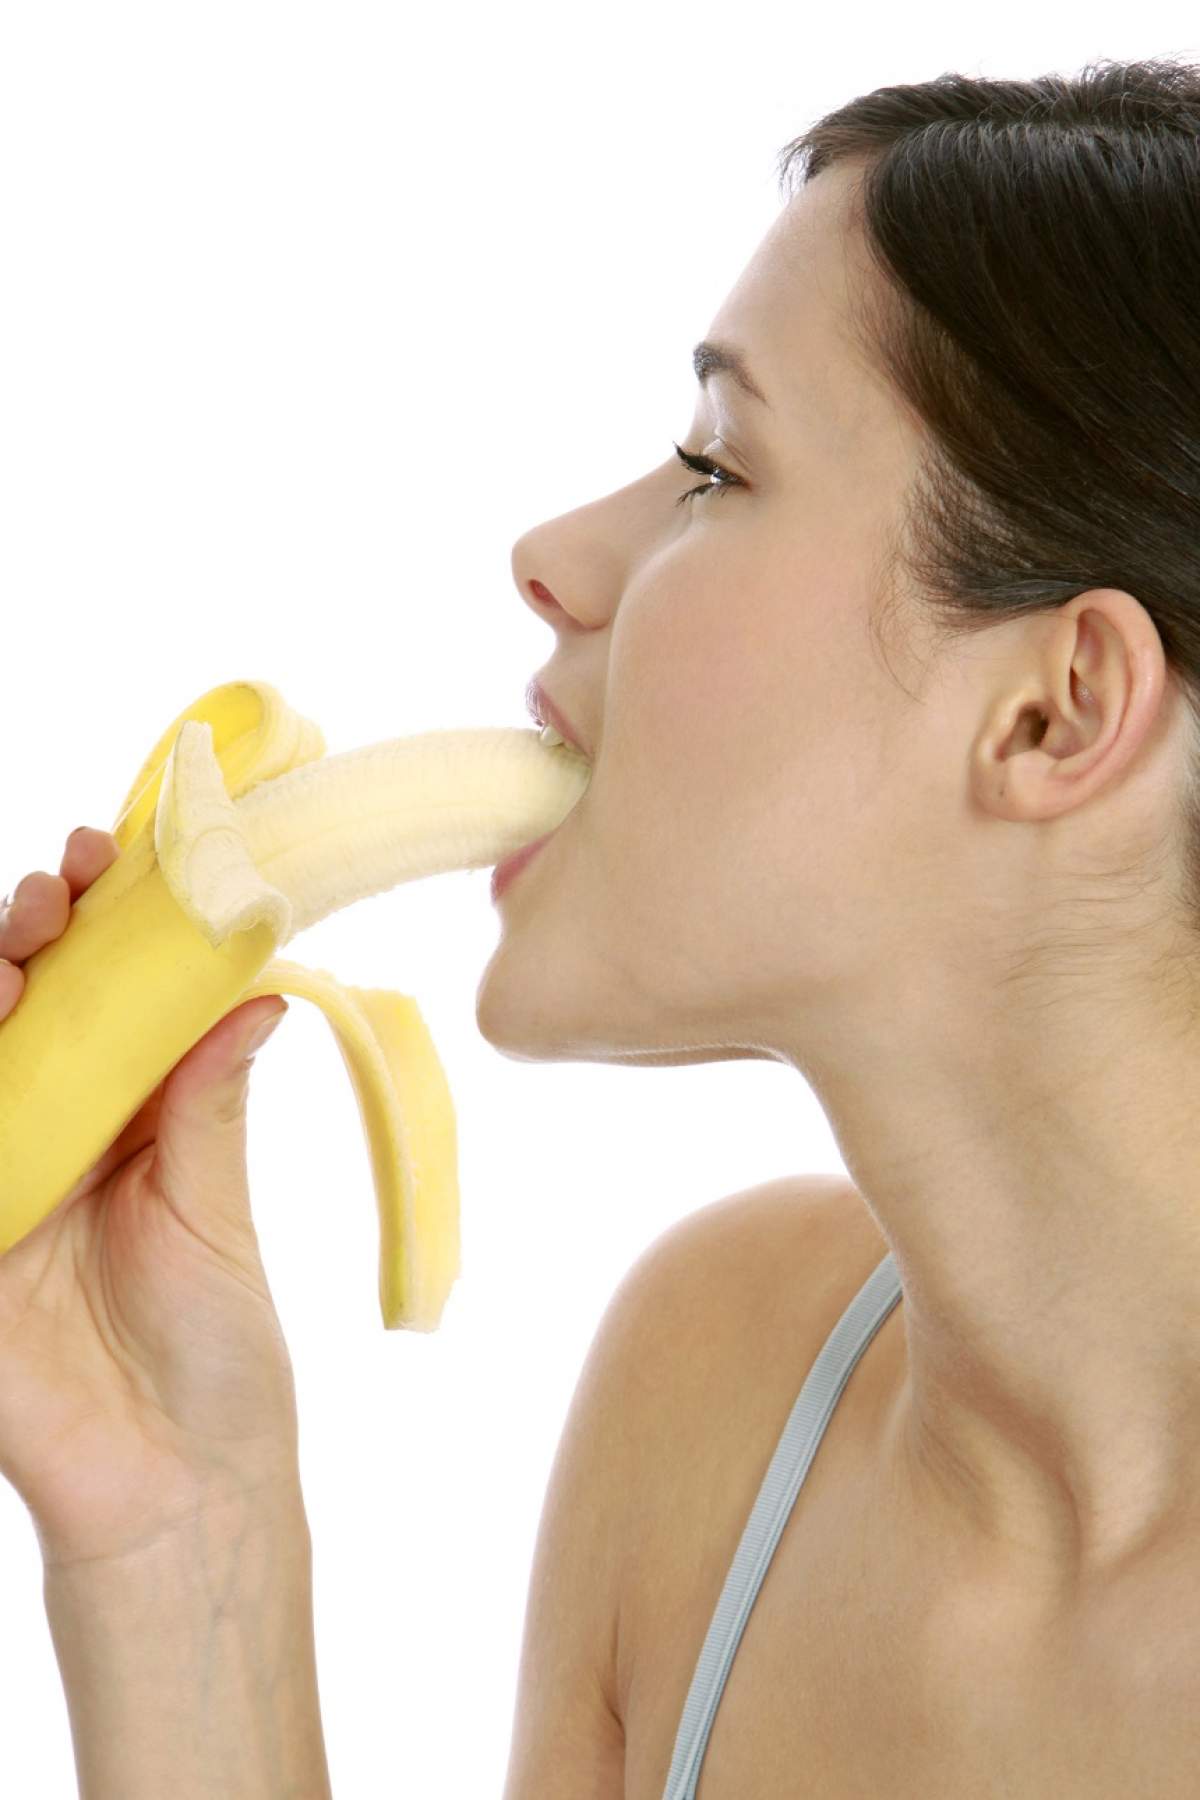 ÎNTREBAREA ZILEI: Ce se întâmplă în corpul tău dacă mănânci două banane pe zi?